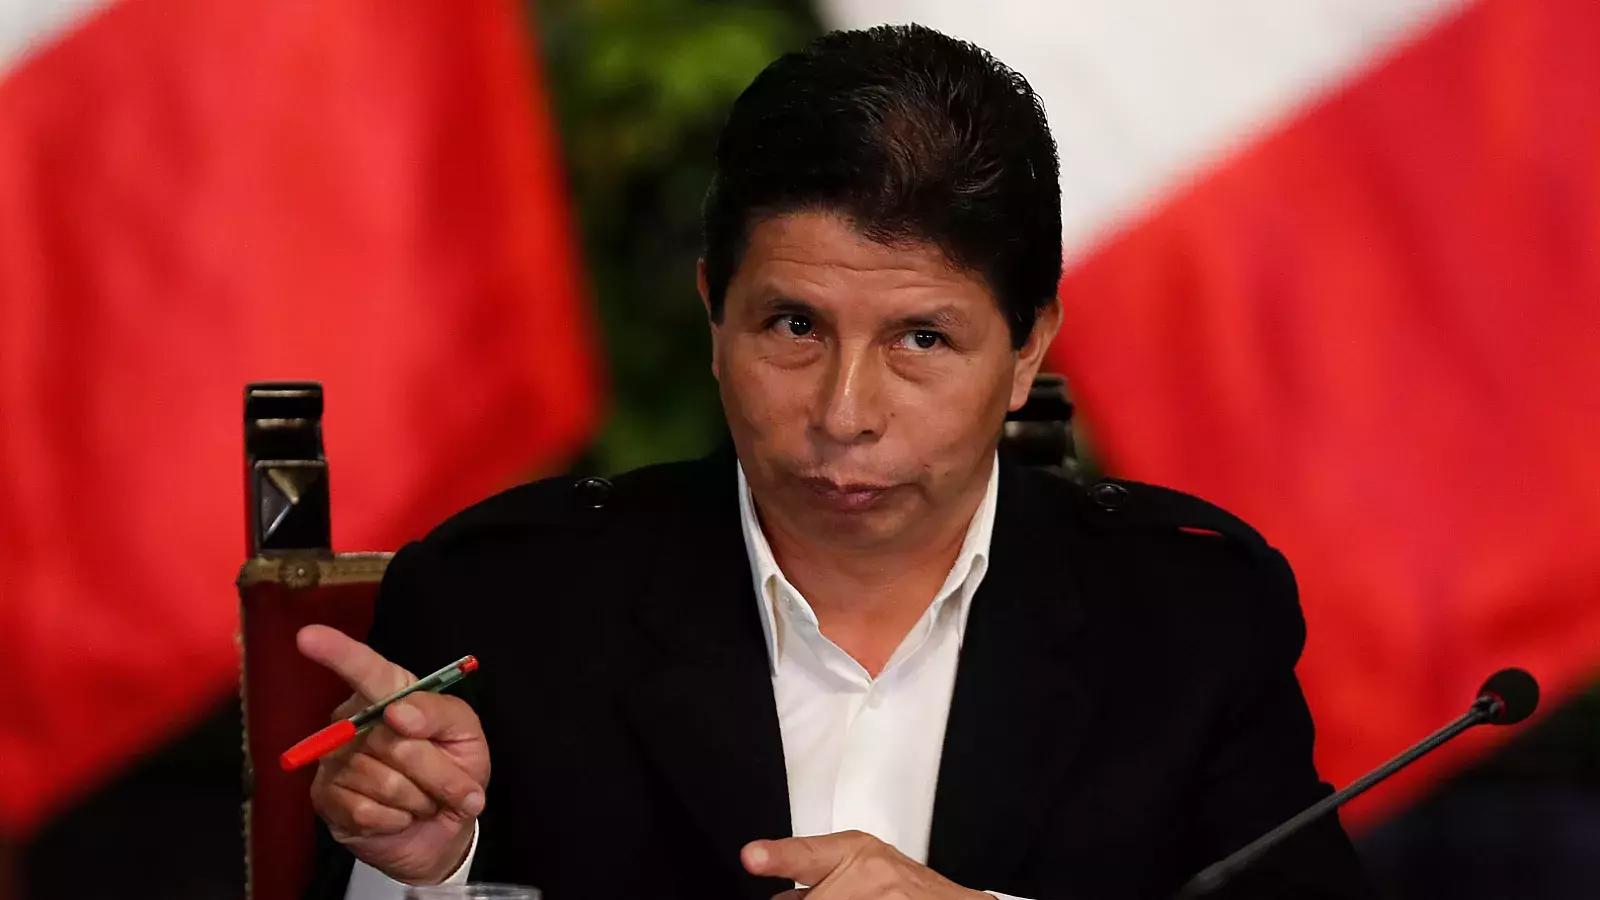 Perú: Congreso aprueba acusar a Pedro Castillo por delitos de organización criminal y corrupción